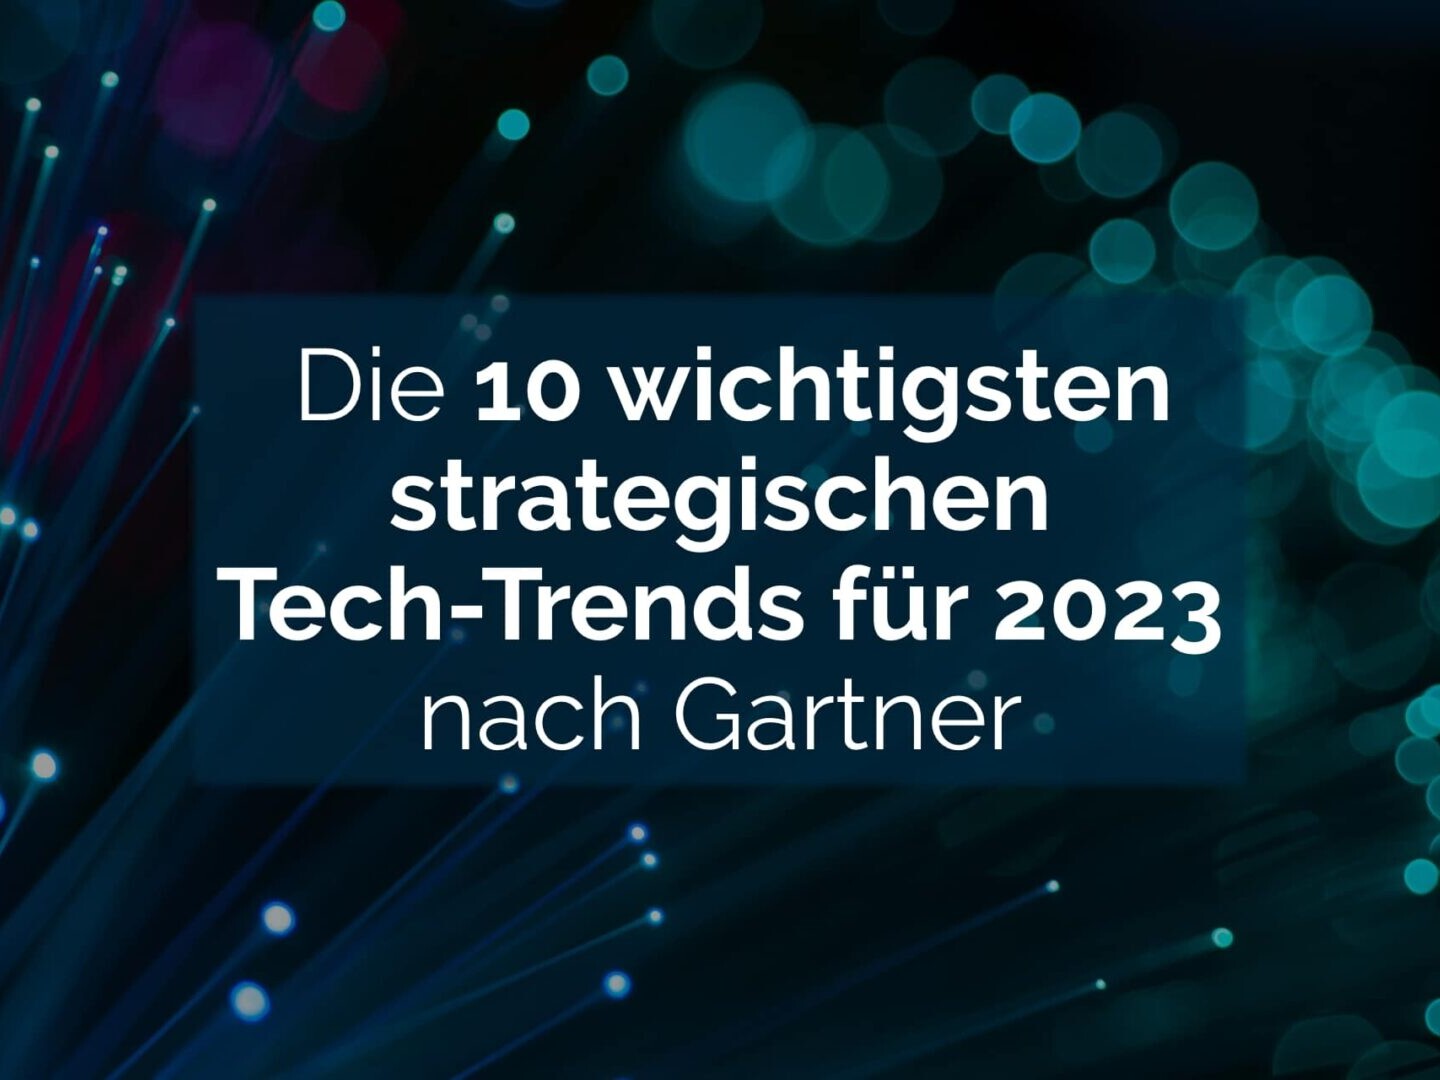 Das Cover eines Buches, das die zehn wichtigsten strategischen Technologietrends für 2023 hervorhebt und sich auf Technologie konzentriert.